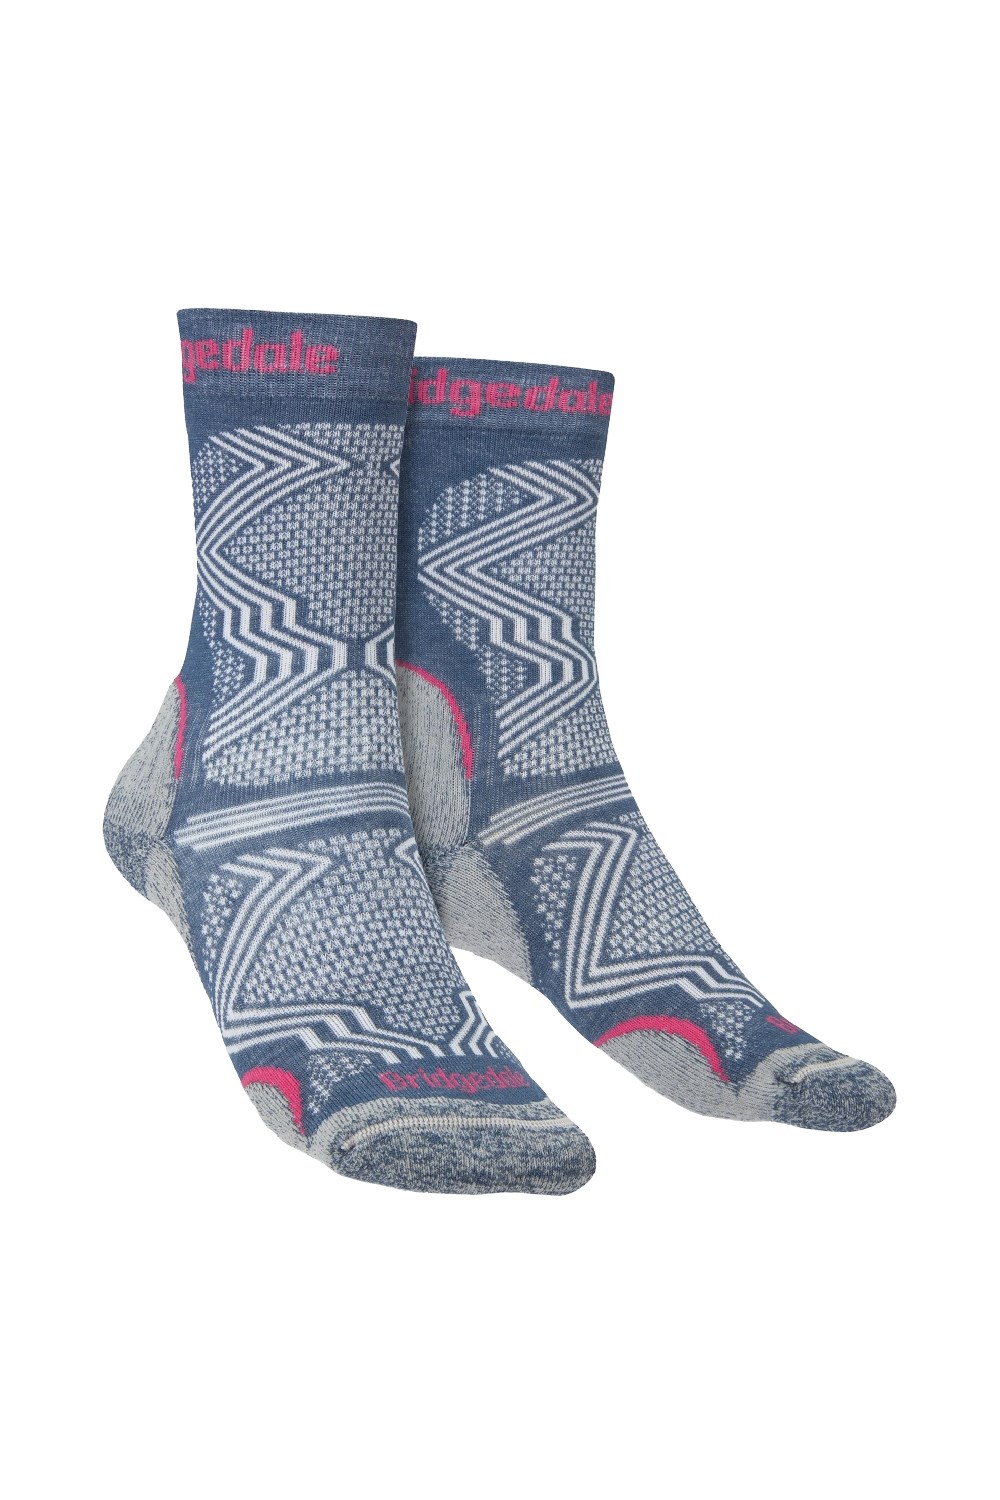 Womens Ultralight T2 Coolmax Hiking Socks -